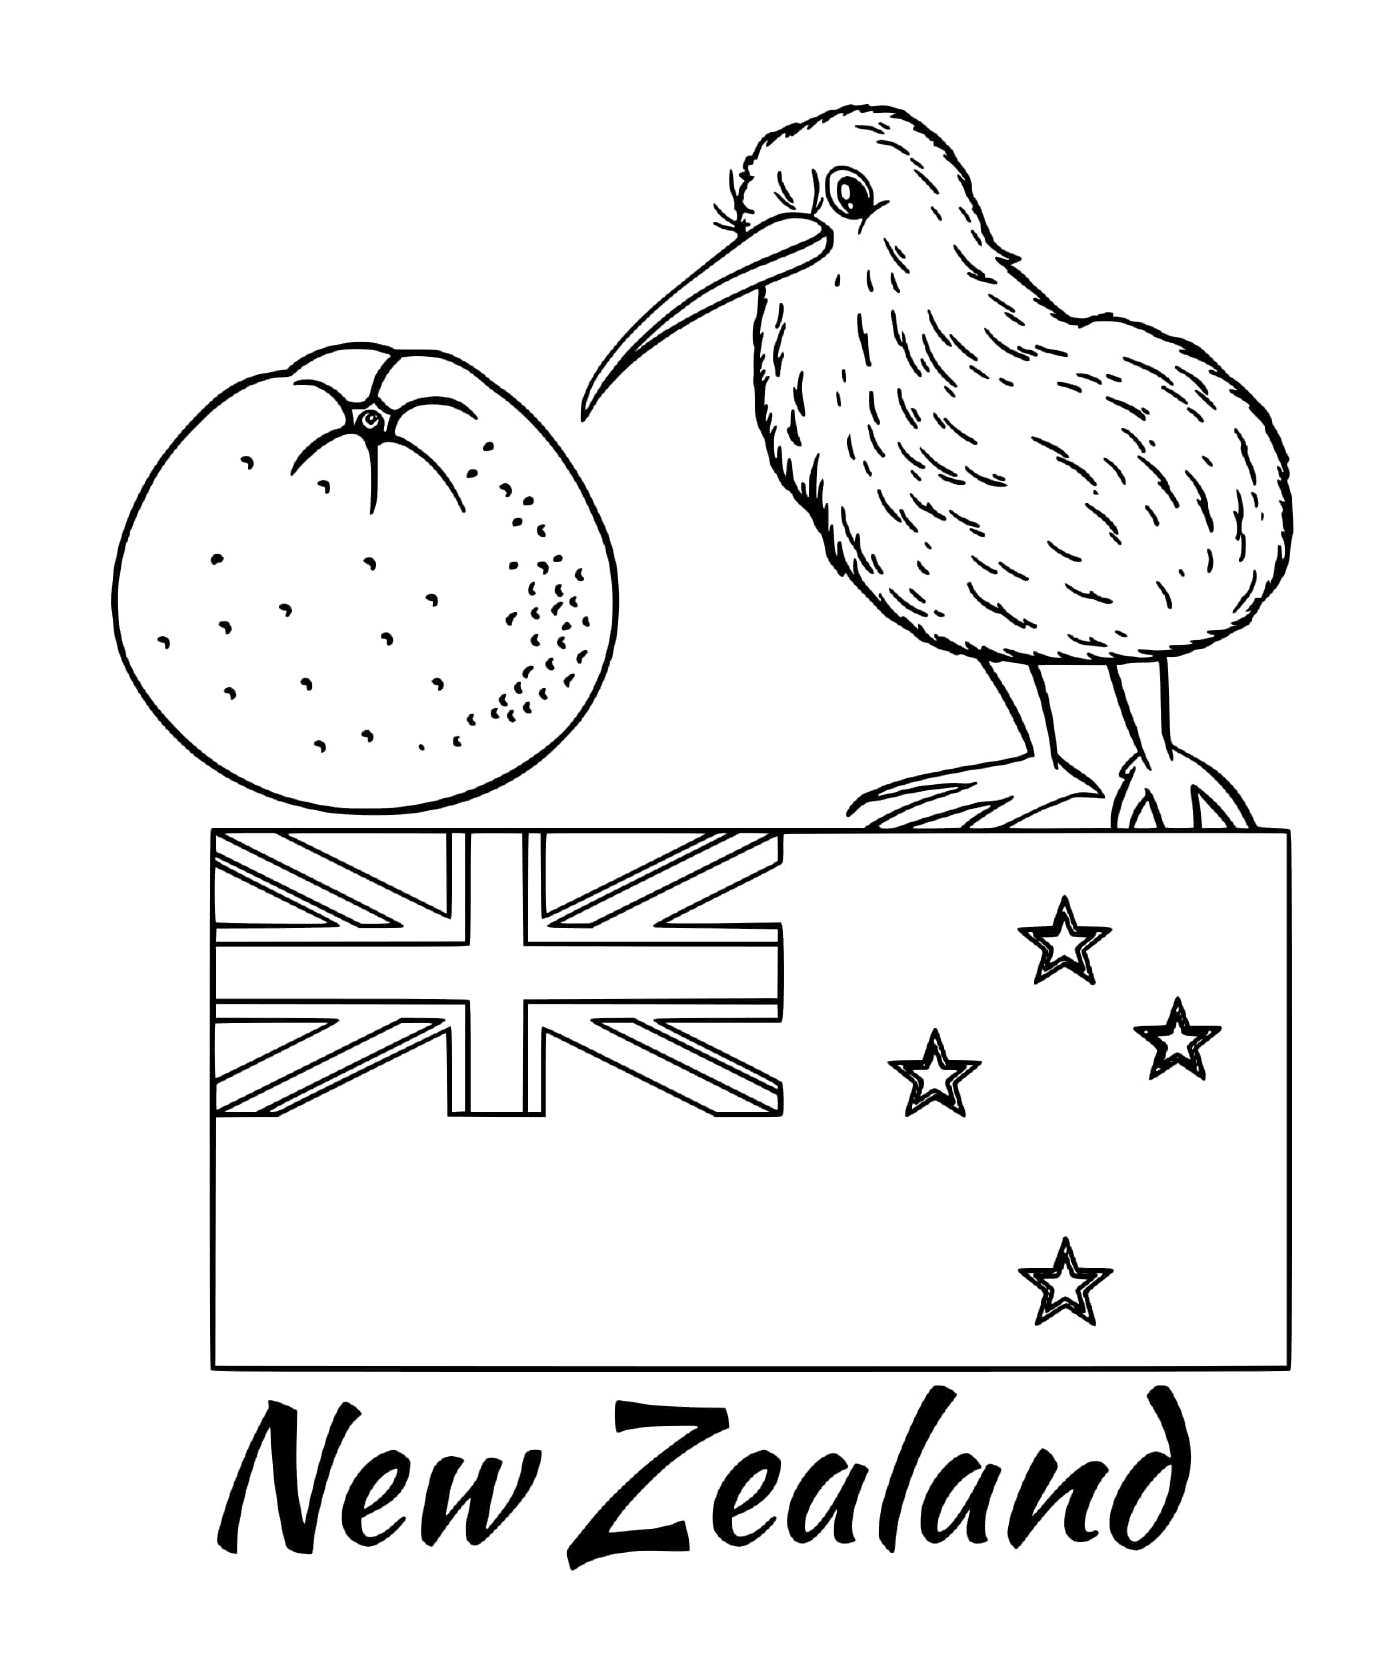  新西兰国旗,kiwi 